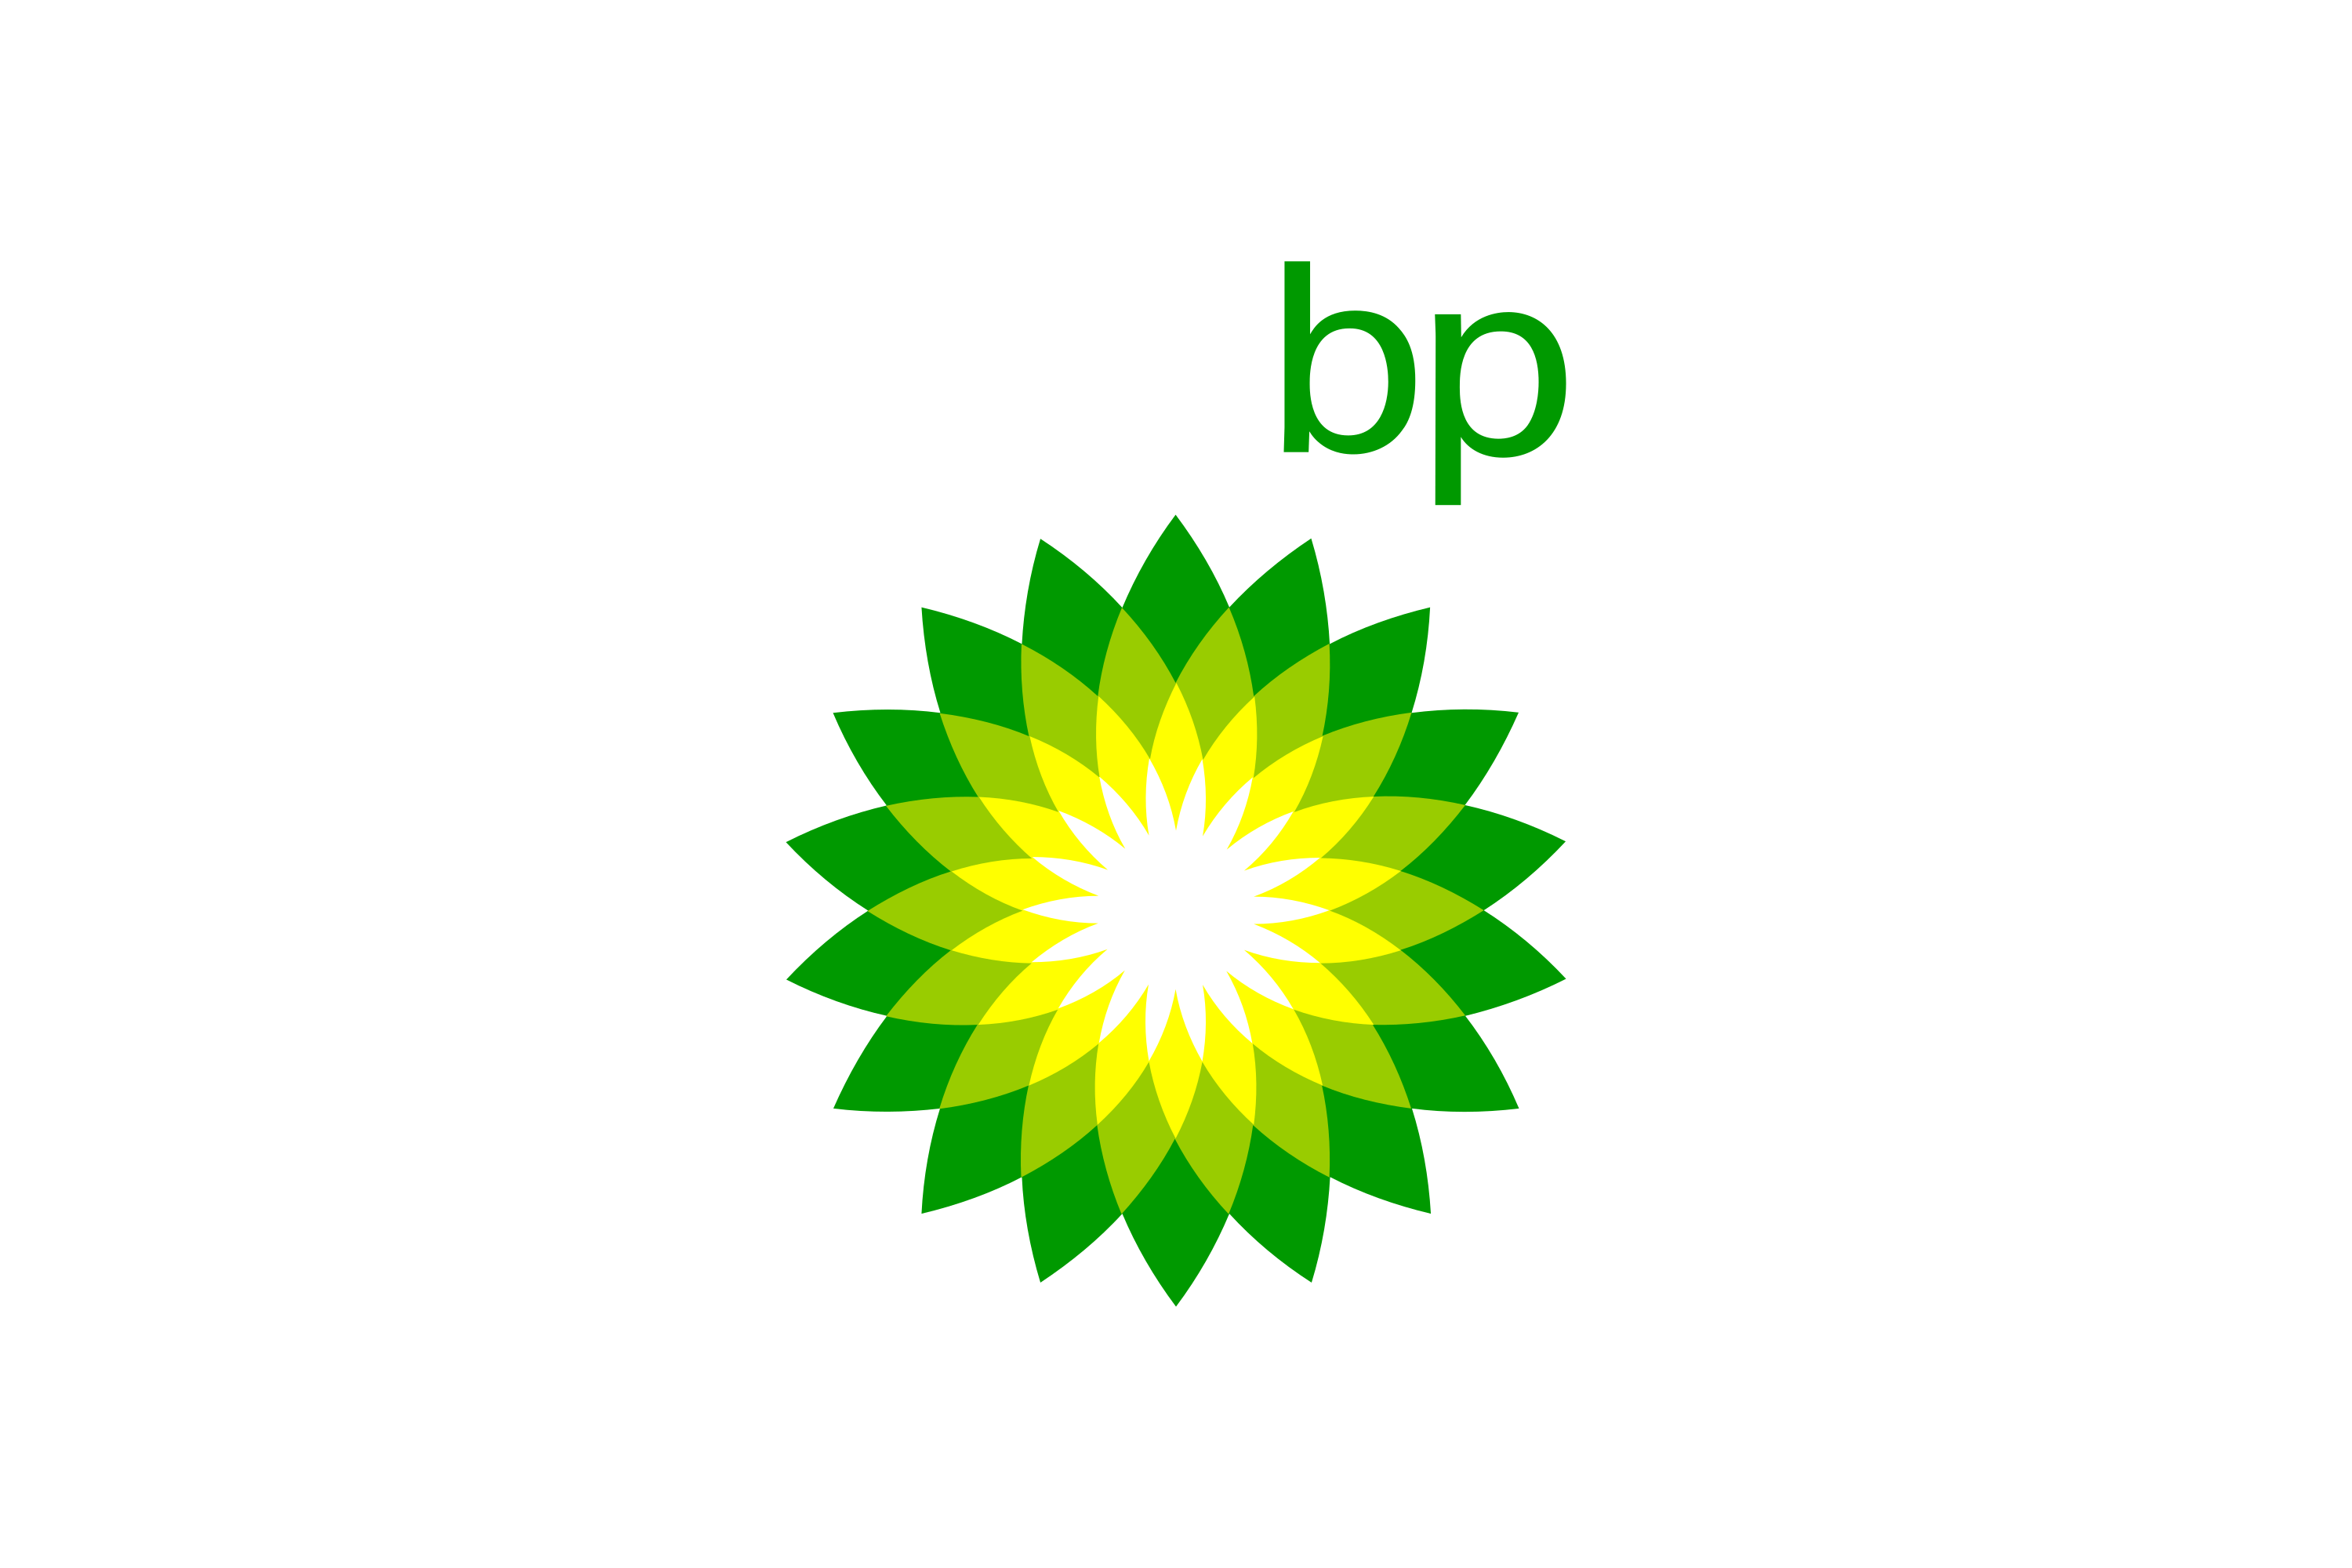 British Petroleum Logo